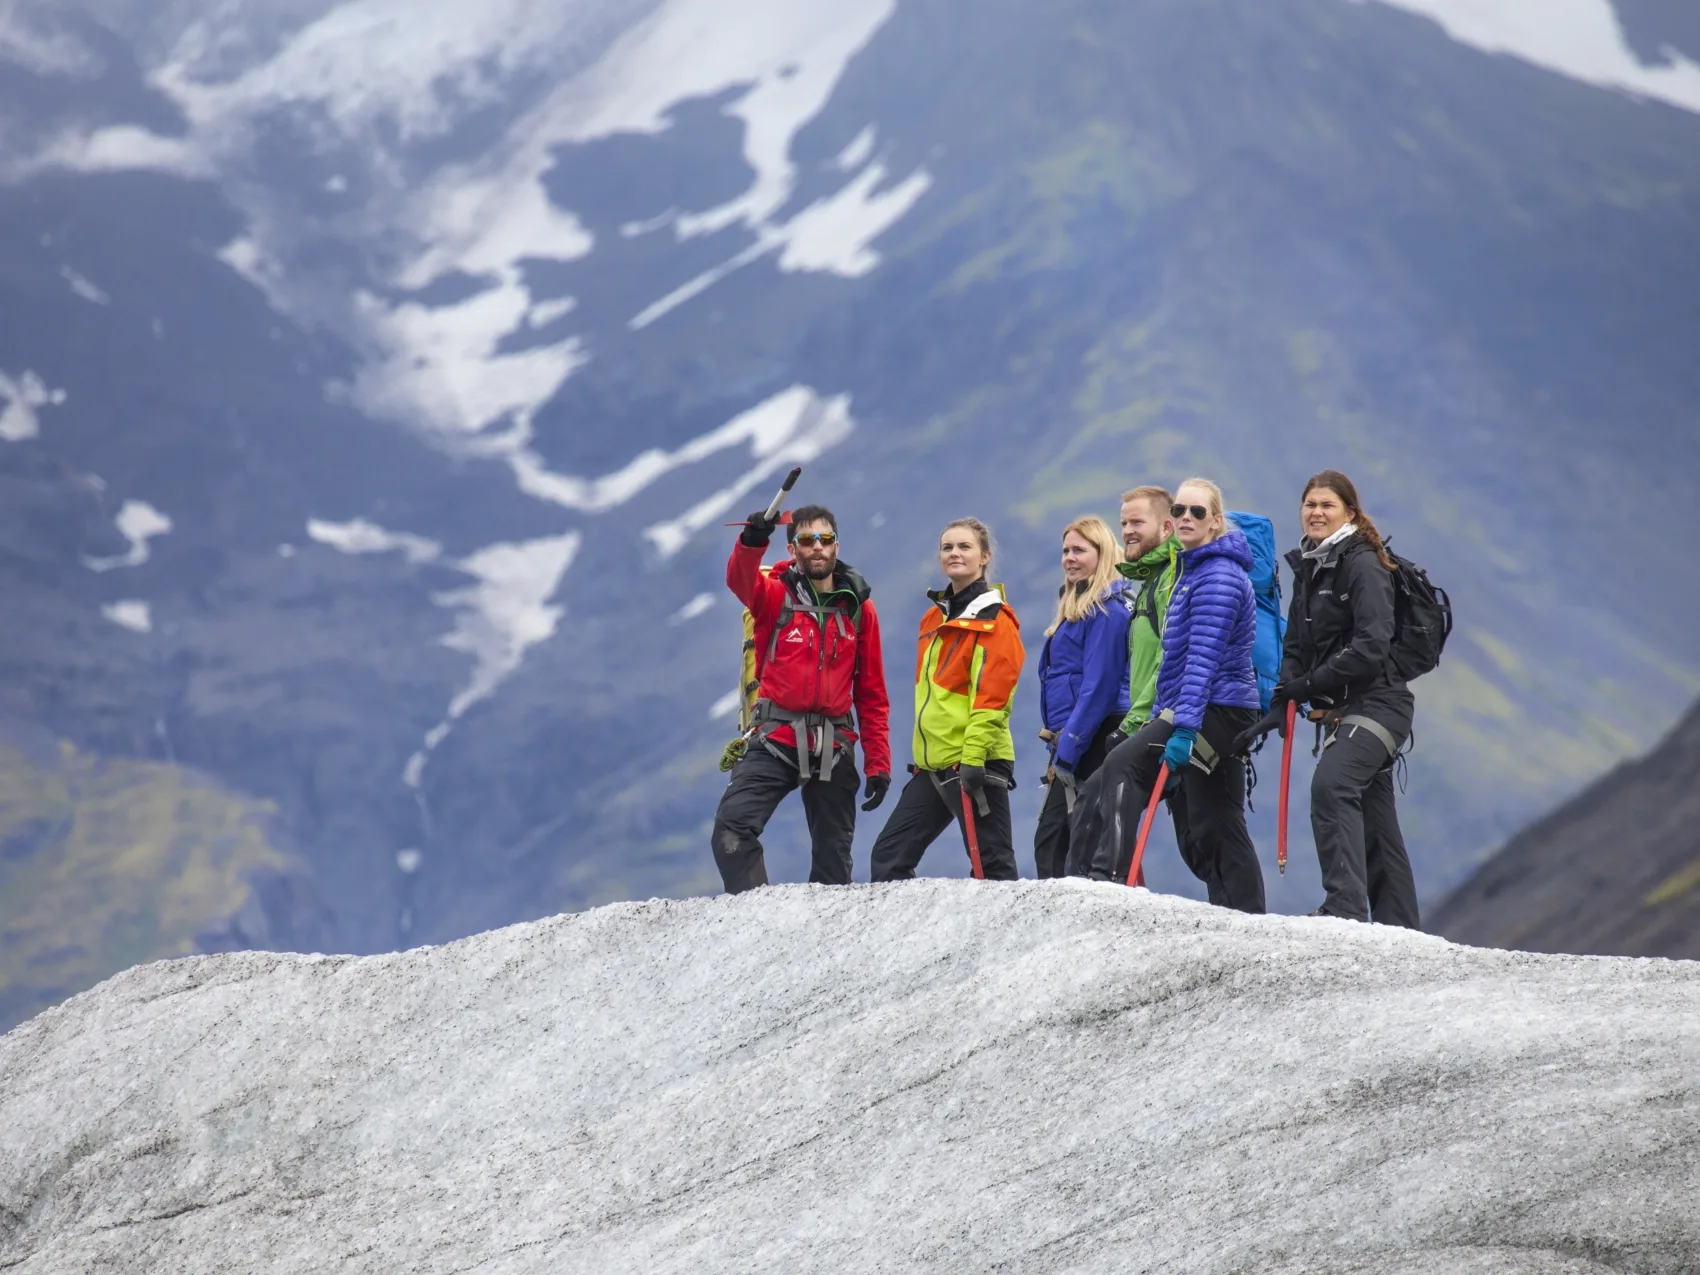 Gletscherwanderung, Gruppe von 5 Menschen begeht zusammen mit Guide einen Gletscher